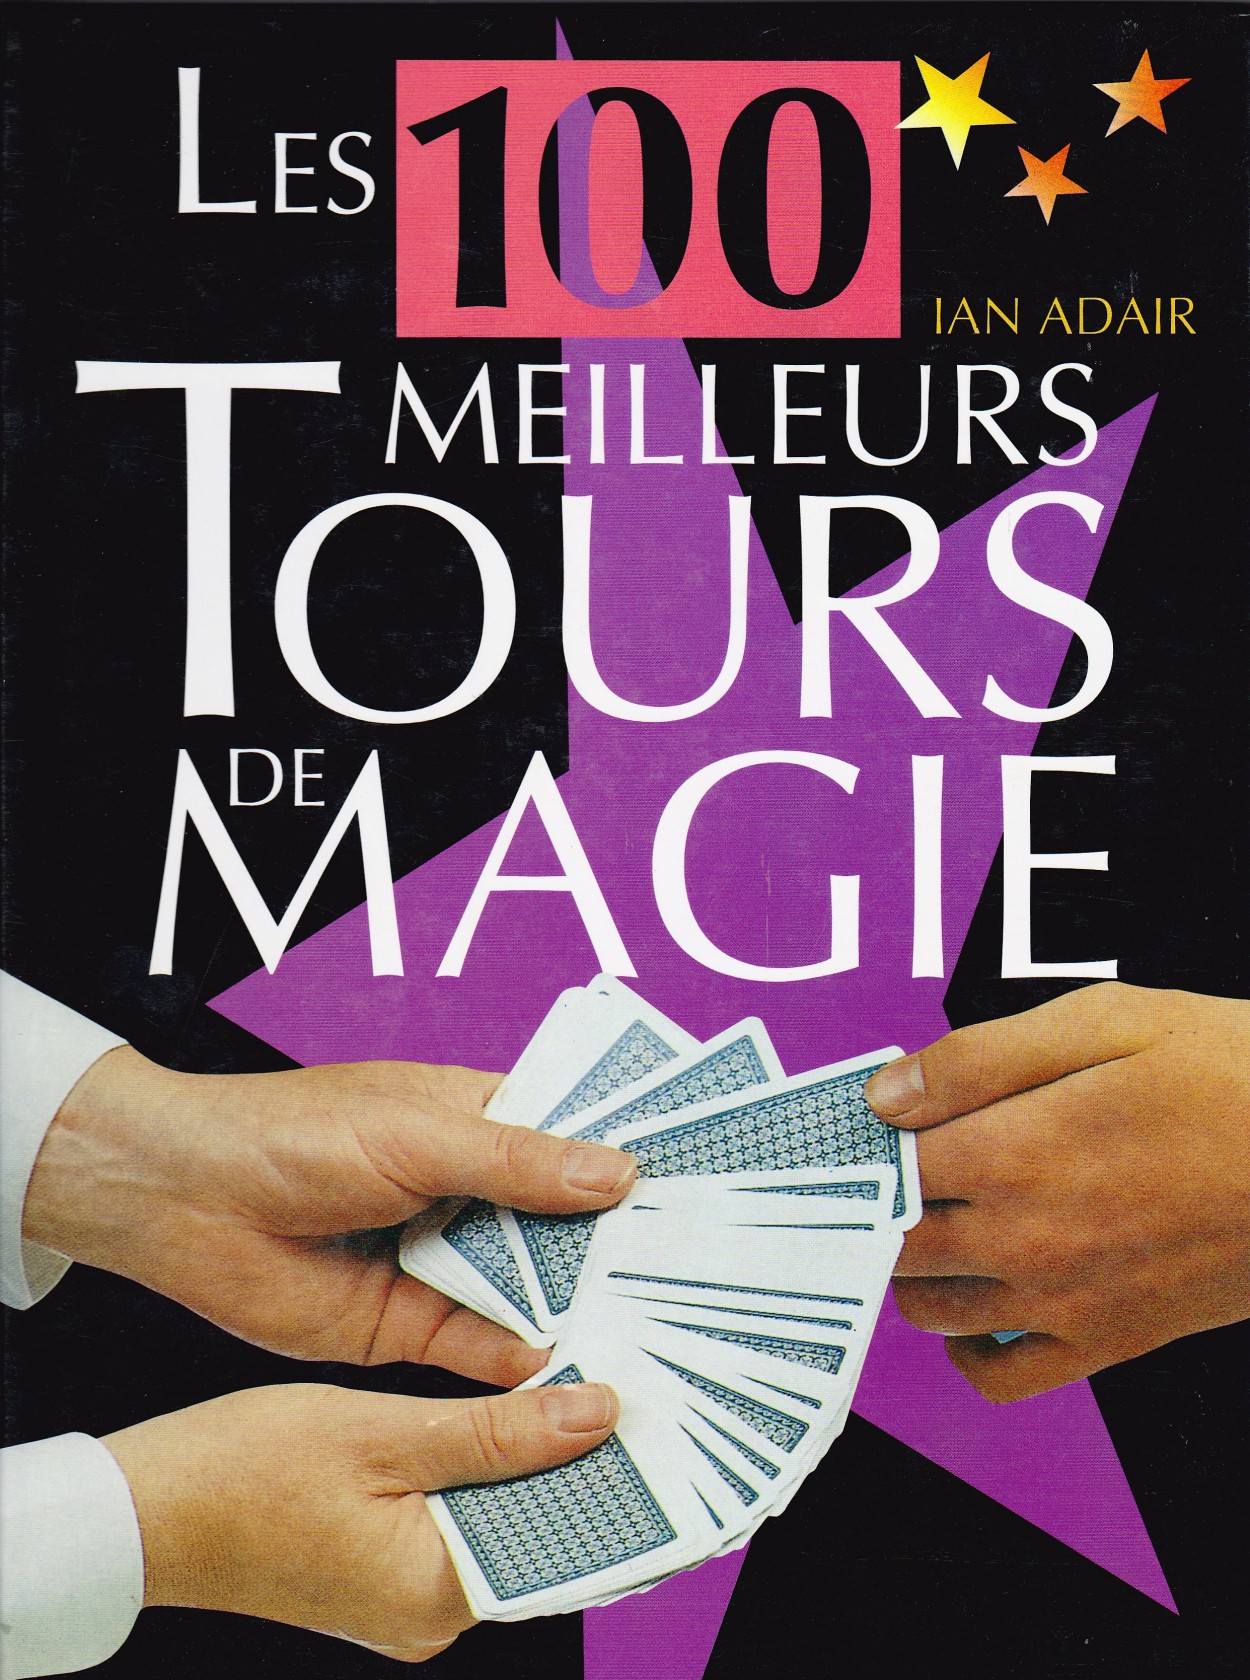 Les 100 meilleurs tours de magie de Ian ADAIR - ▷ Virtual Magie